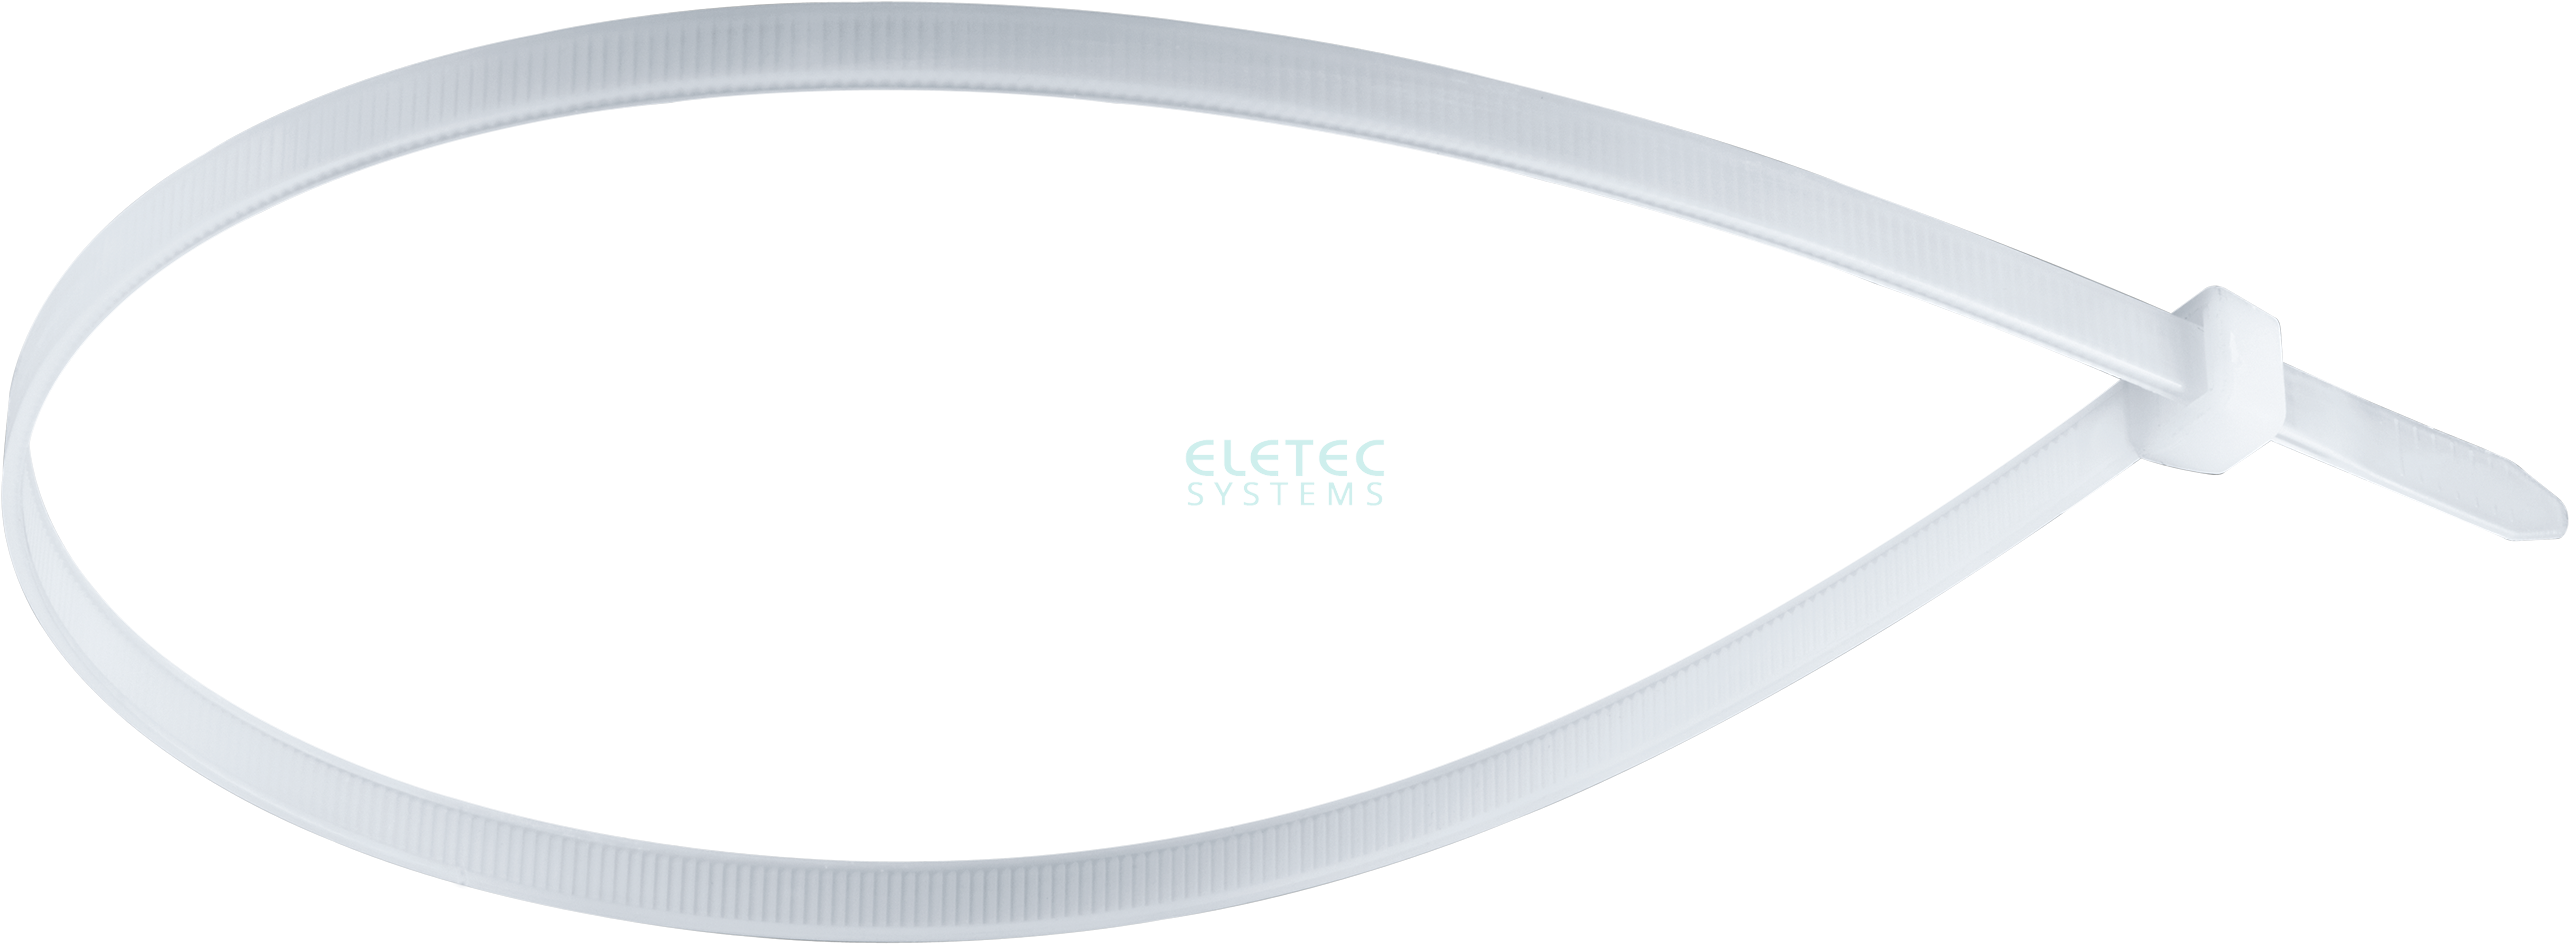 картинка Стяжка для кабеля 360х3,6 бесцветная (100 шт) Eletec Systems